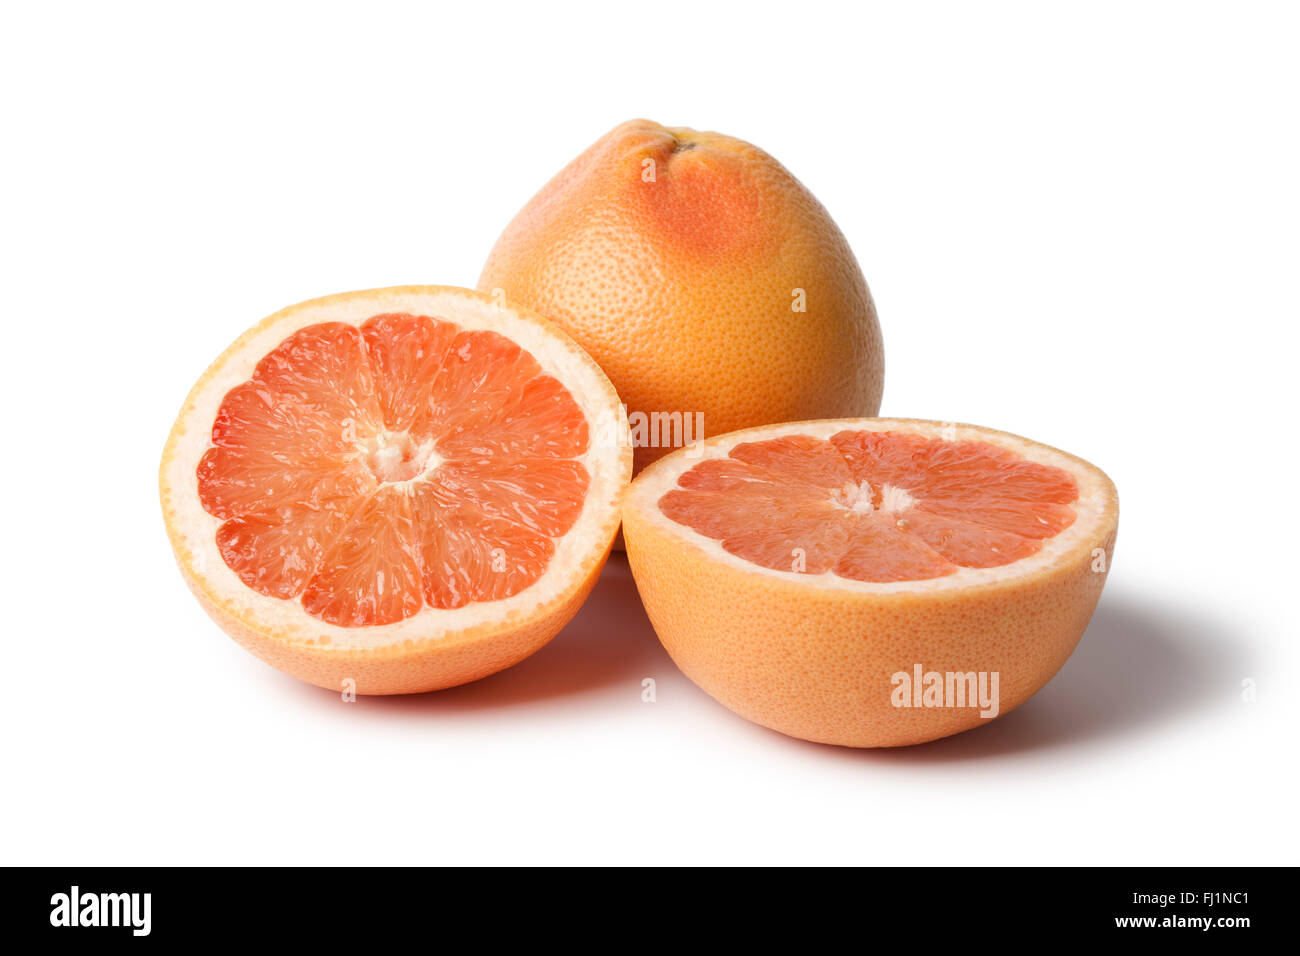 Whole and half fresh grapefruit on white background Stock Photo